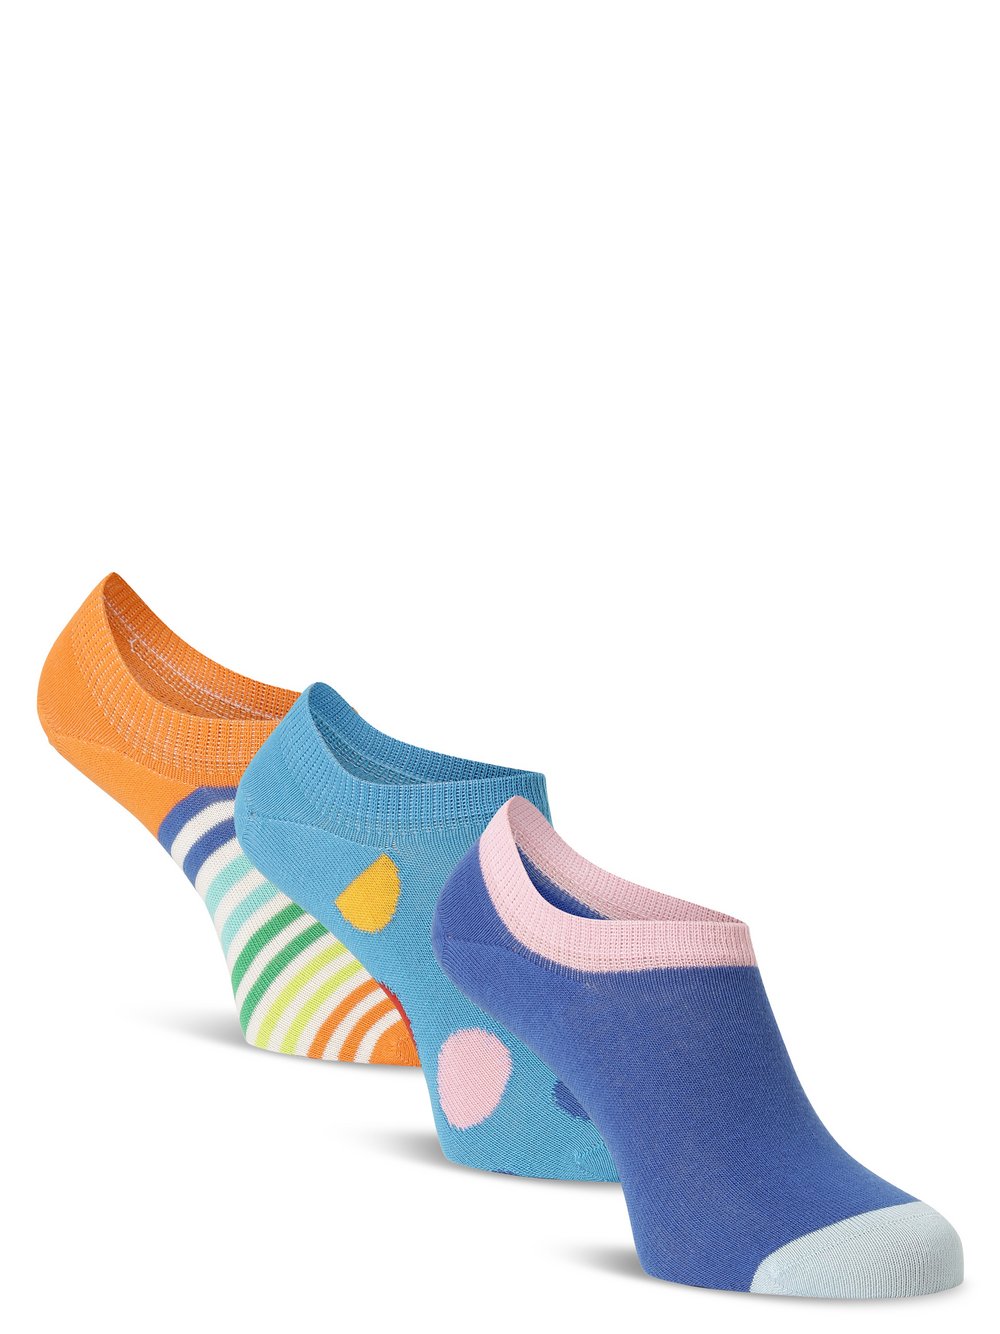 Happy Socks - Skarpety do obuwia sportowego pakowane po 3 szt., niebieski|wielokolorowy